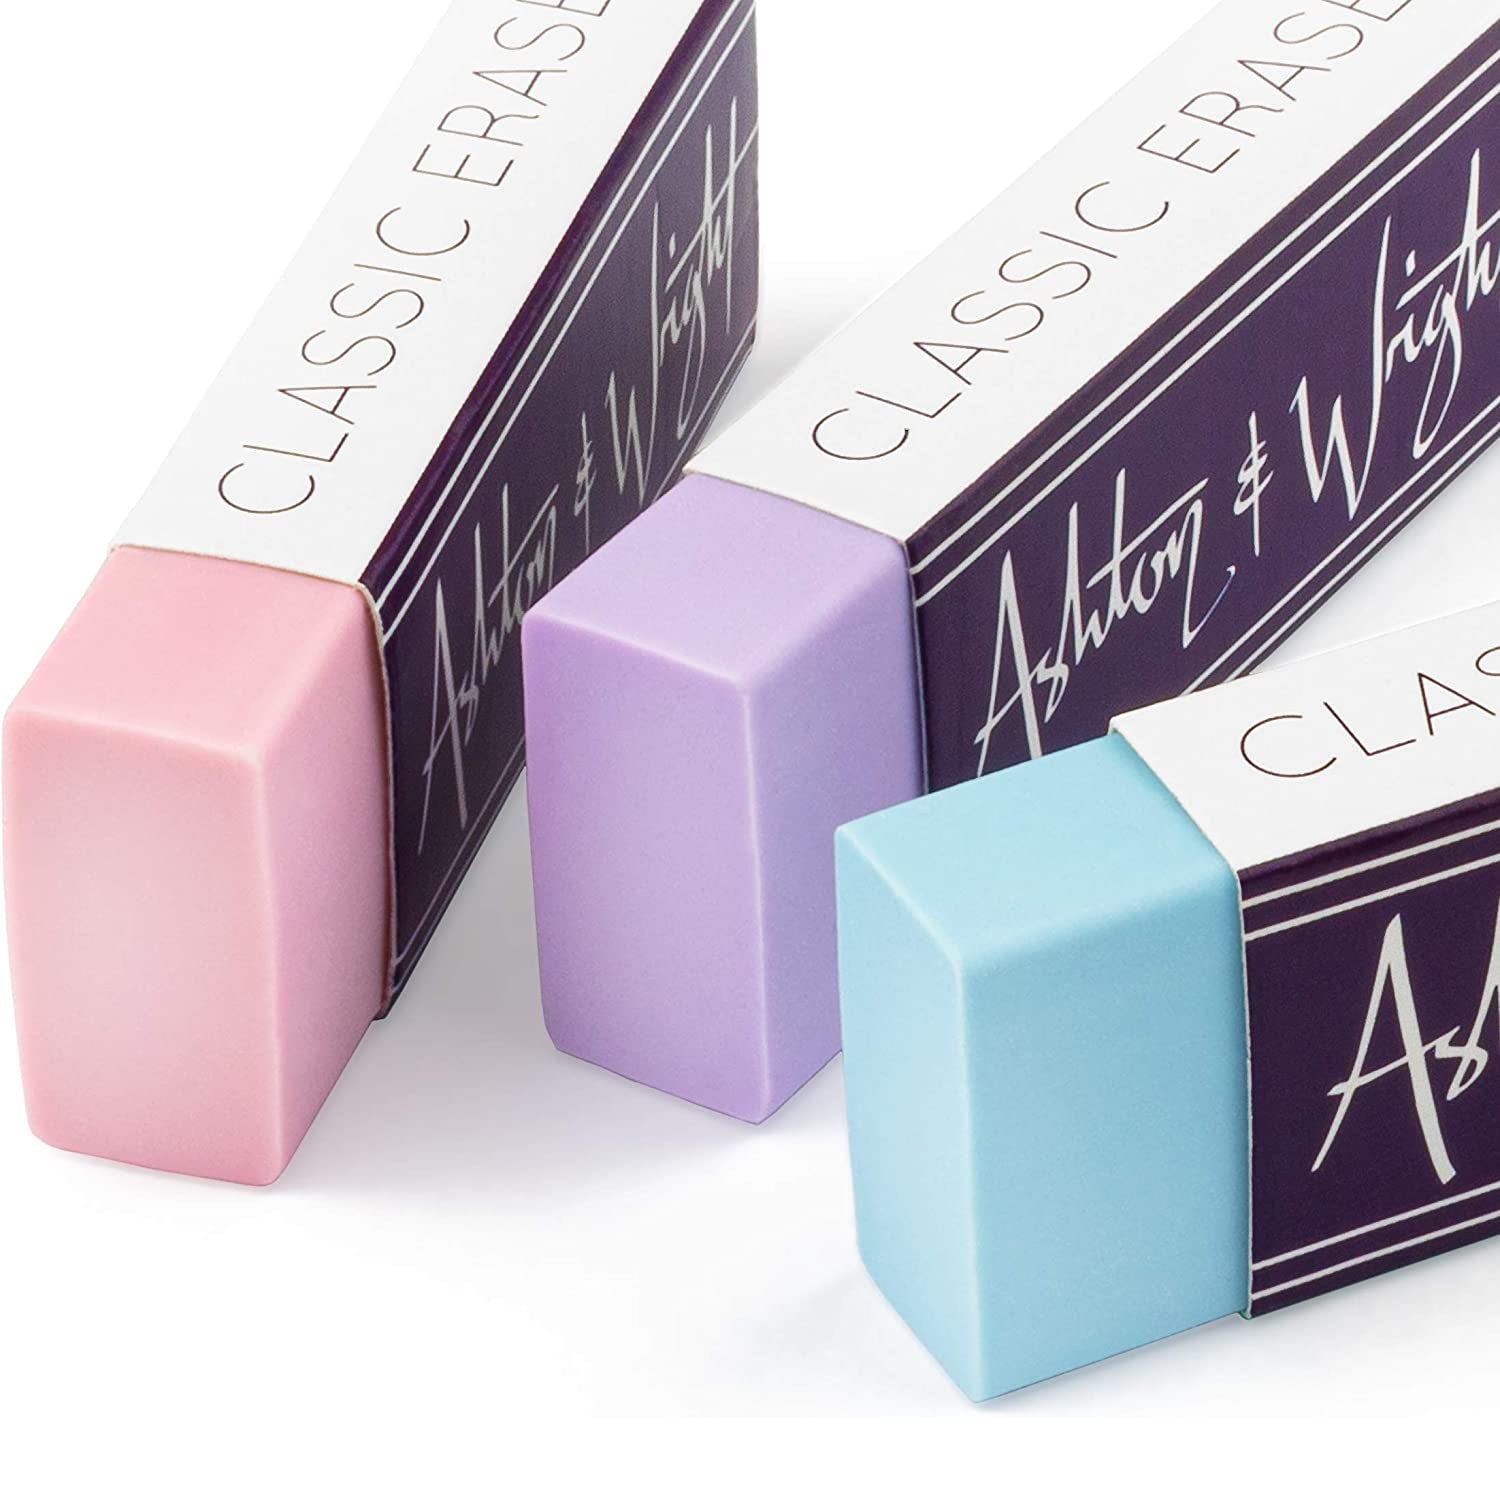 Classic Latex-Free Plastic Erasers - Pastel